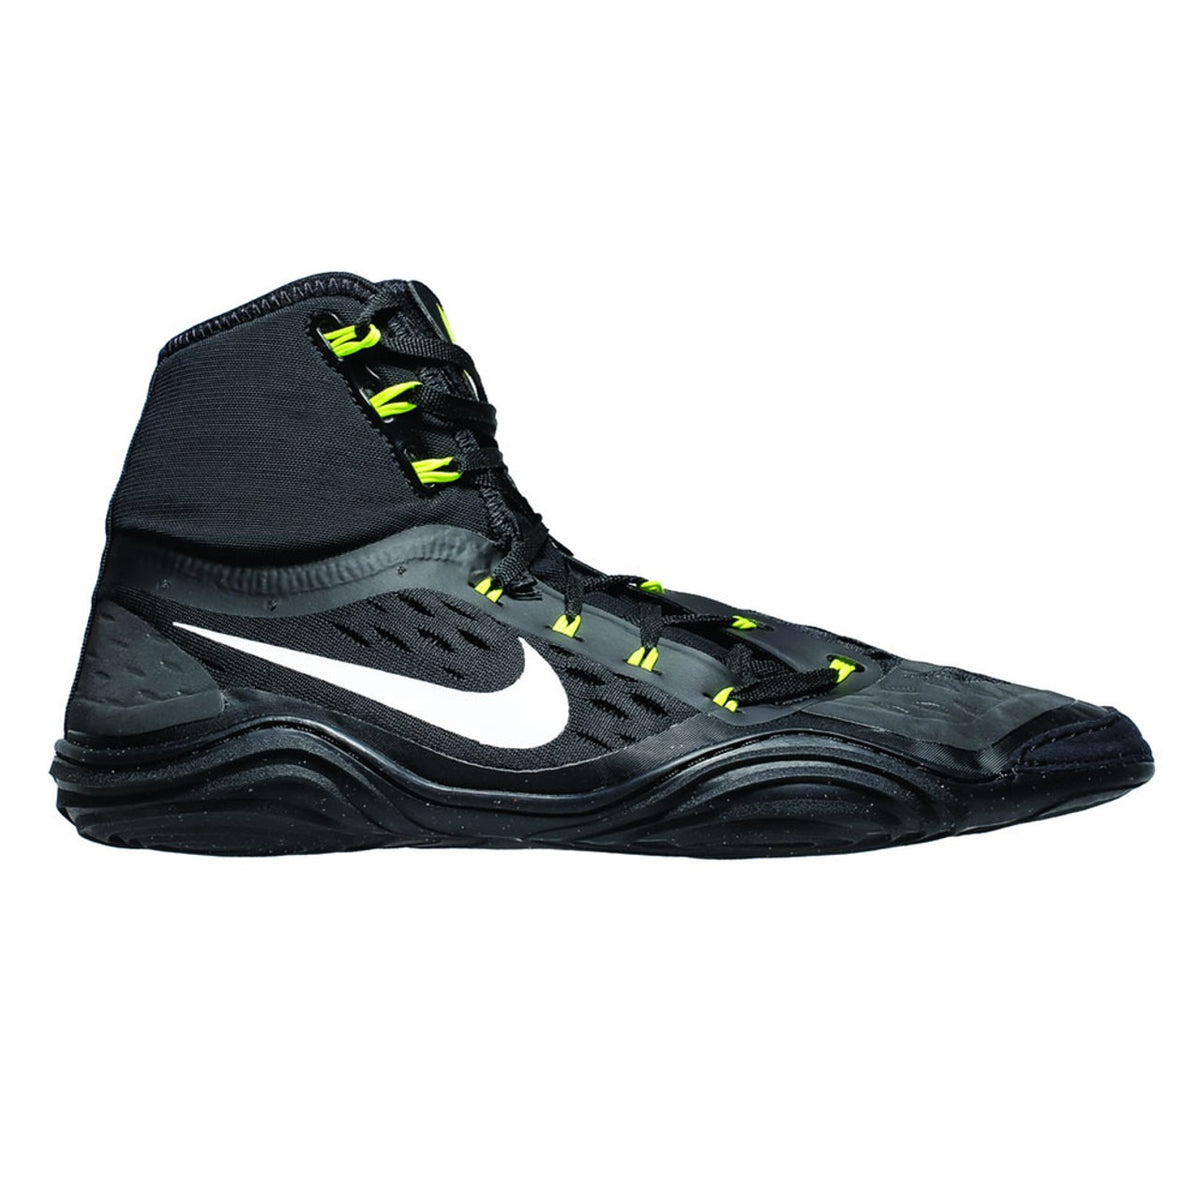 Wrestlingové boty Nike HYPERSWEEP LE. Profesionální zápasová obuv pro všechny ambiciózní zápasníky. Díky nejpokročilejší technologii vám Nike Hypersweep poskytuje dostatečnou přilnavost na zápasové podložce. V tréninku i soutěži. Zde v barvě černá/volt.